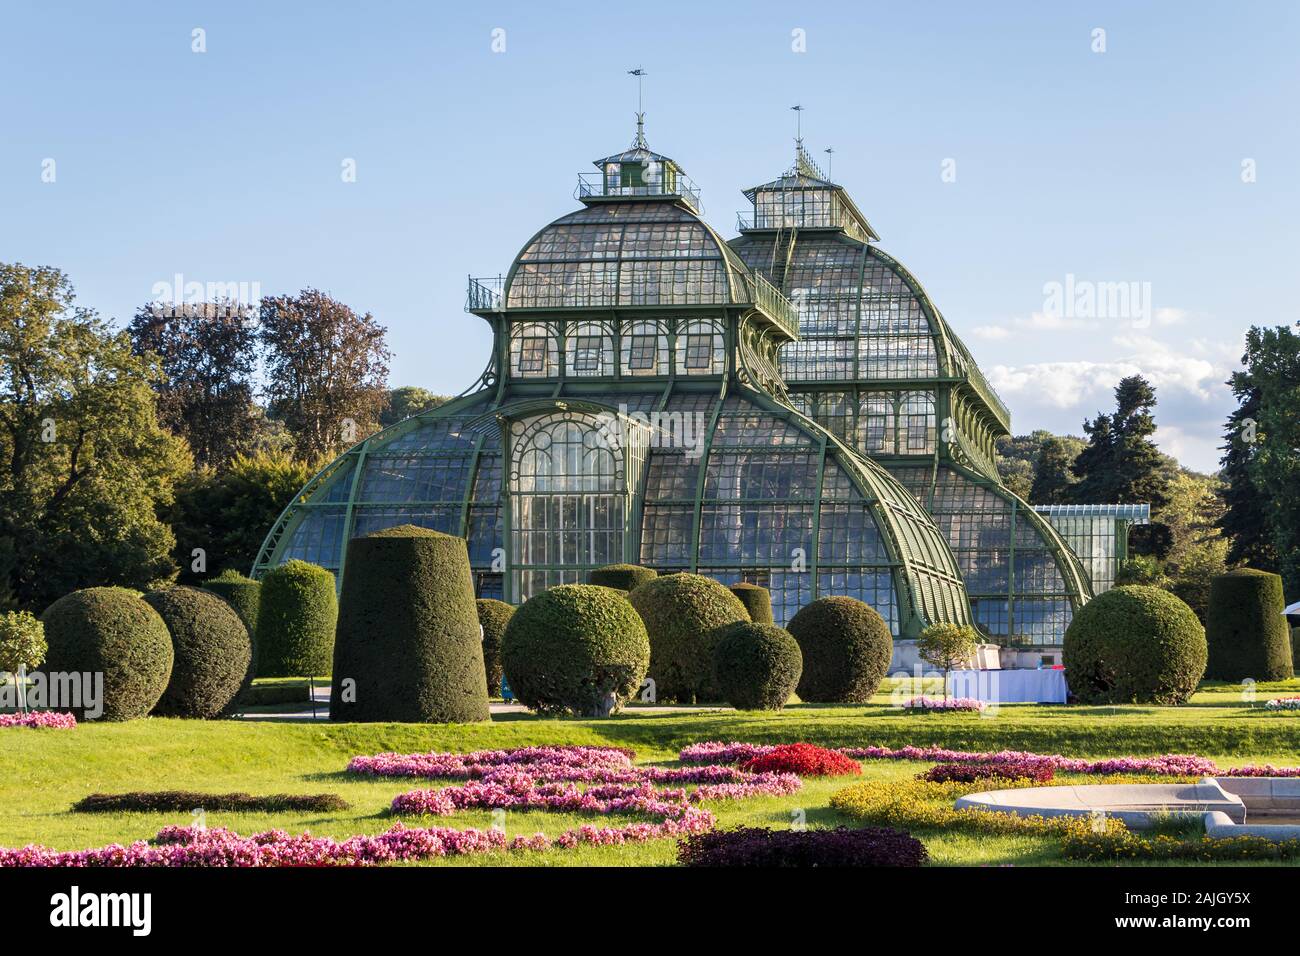 Austria, Vienna - September 3, 2019: Botanical Garden Palmenhaus Schonbrunn is a large greenhouse located in schonbrunn palace garden in Vienna, Austr Stock Photo